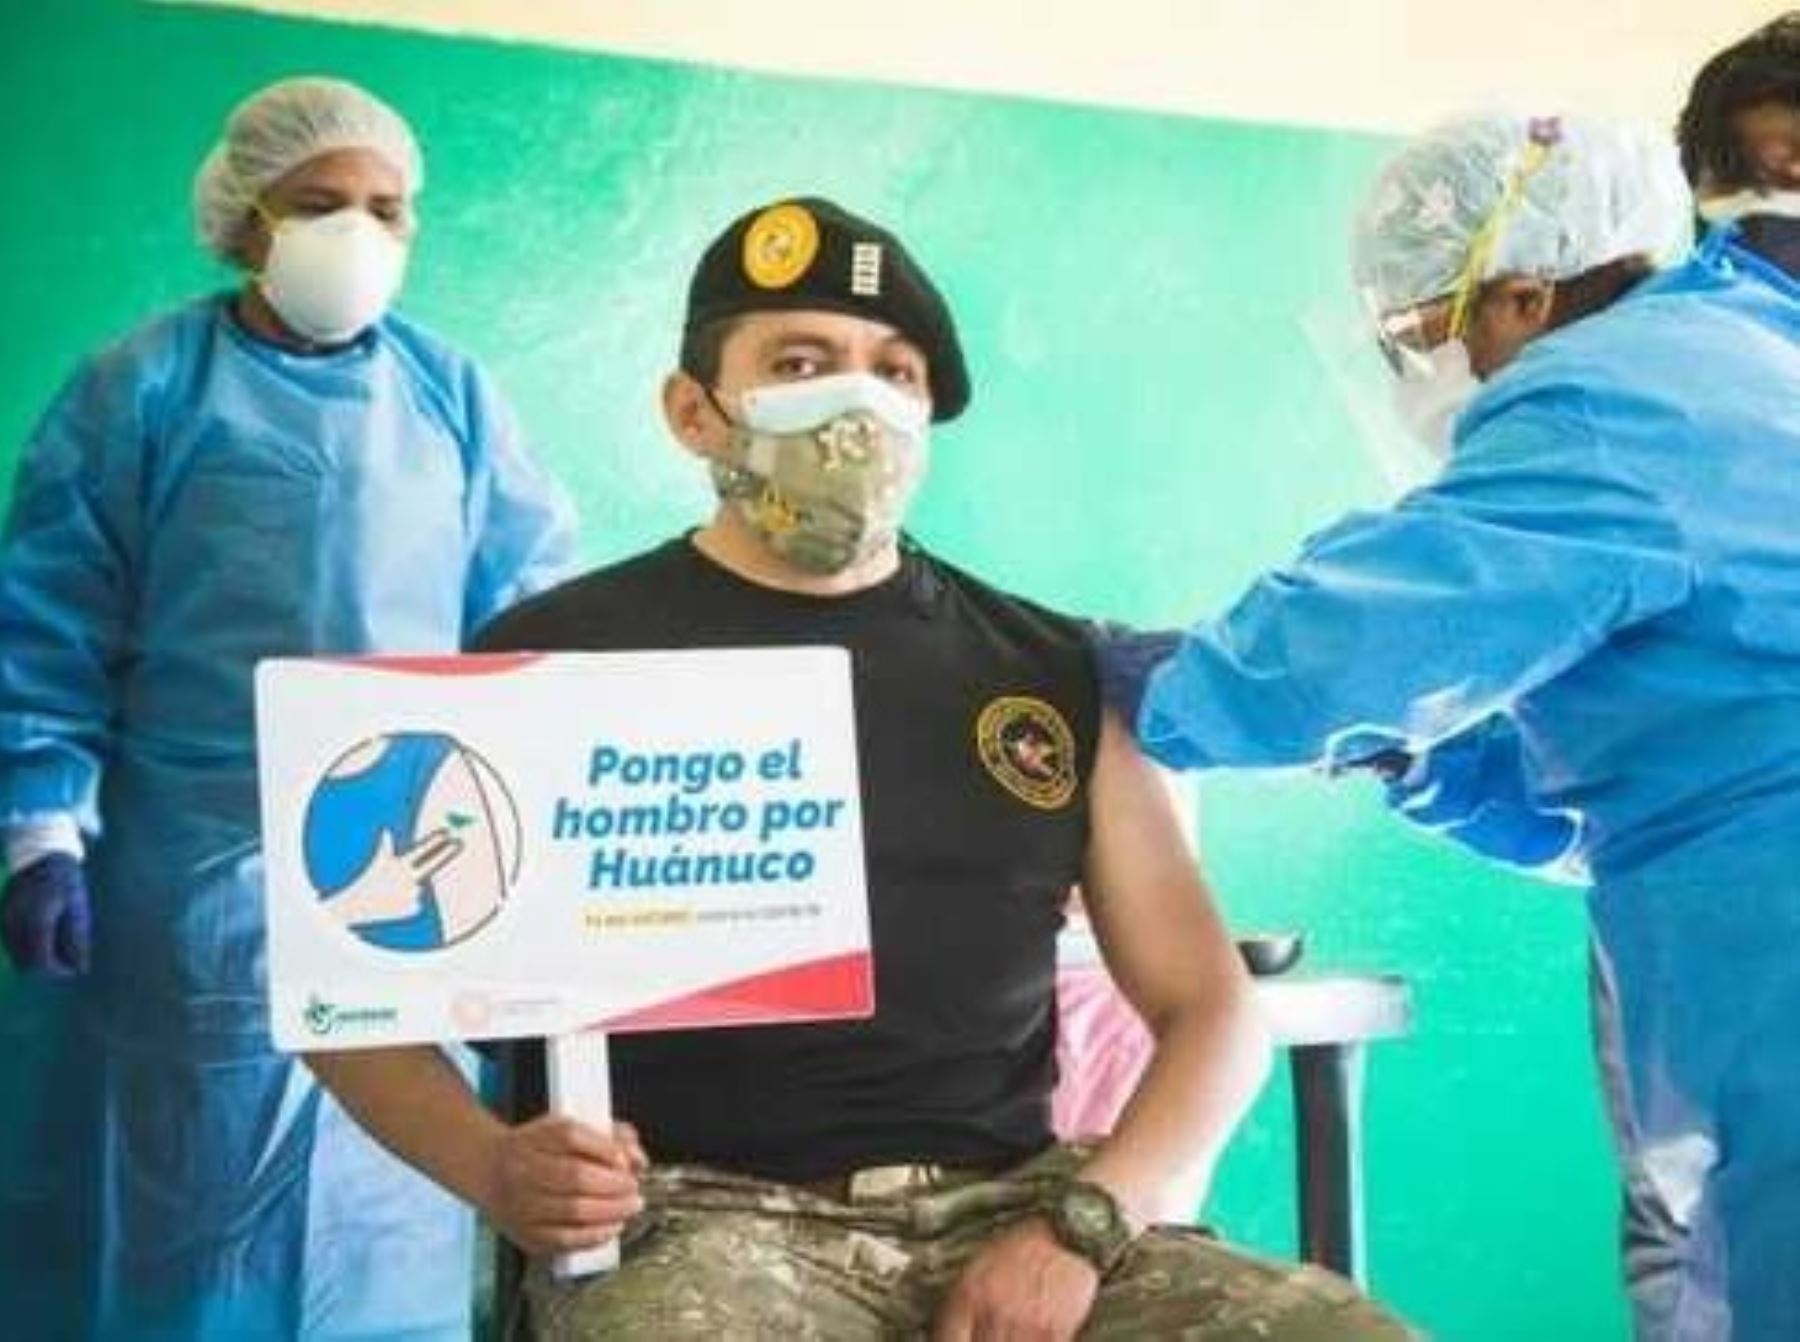 Más de 600 miembros del Ejército del Perú son vacunados contra la covid-19 en Huánuco, informó el Ministerio de Salud (Minsa). ANDINA/Difusión